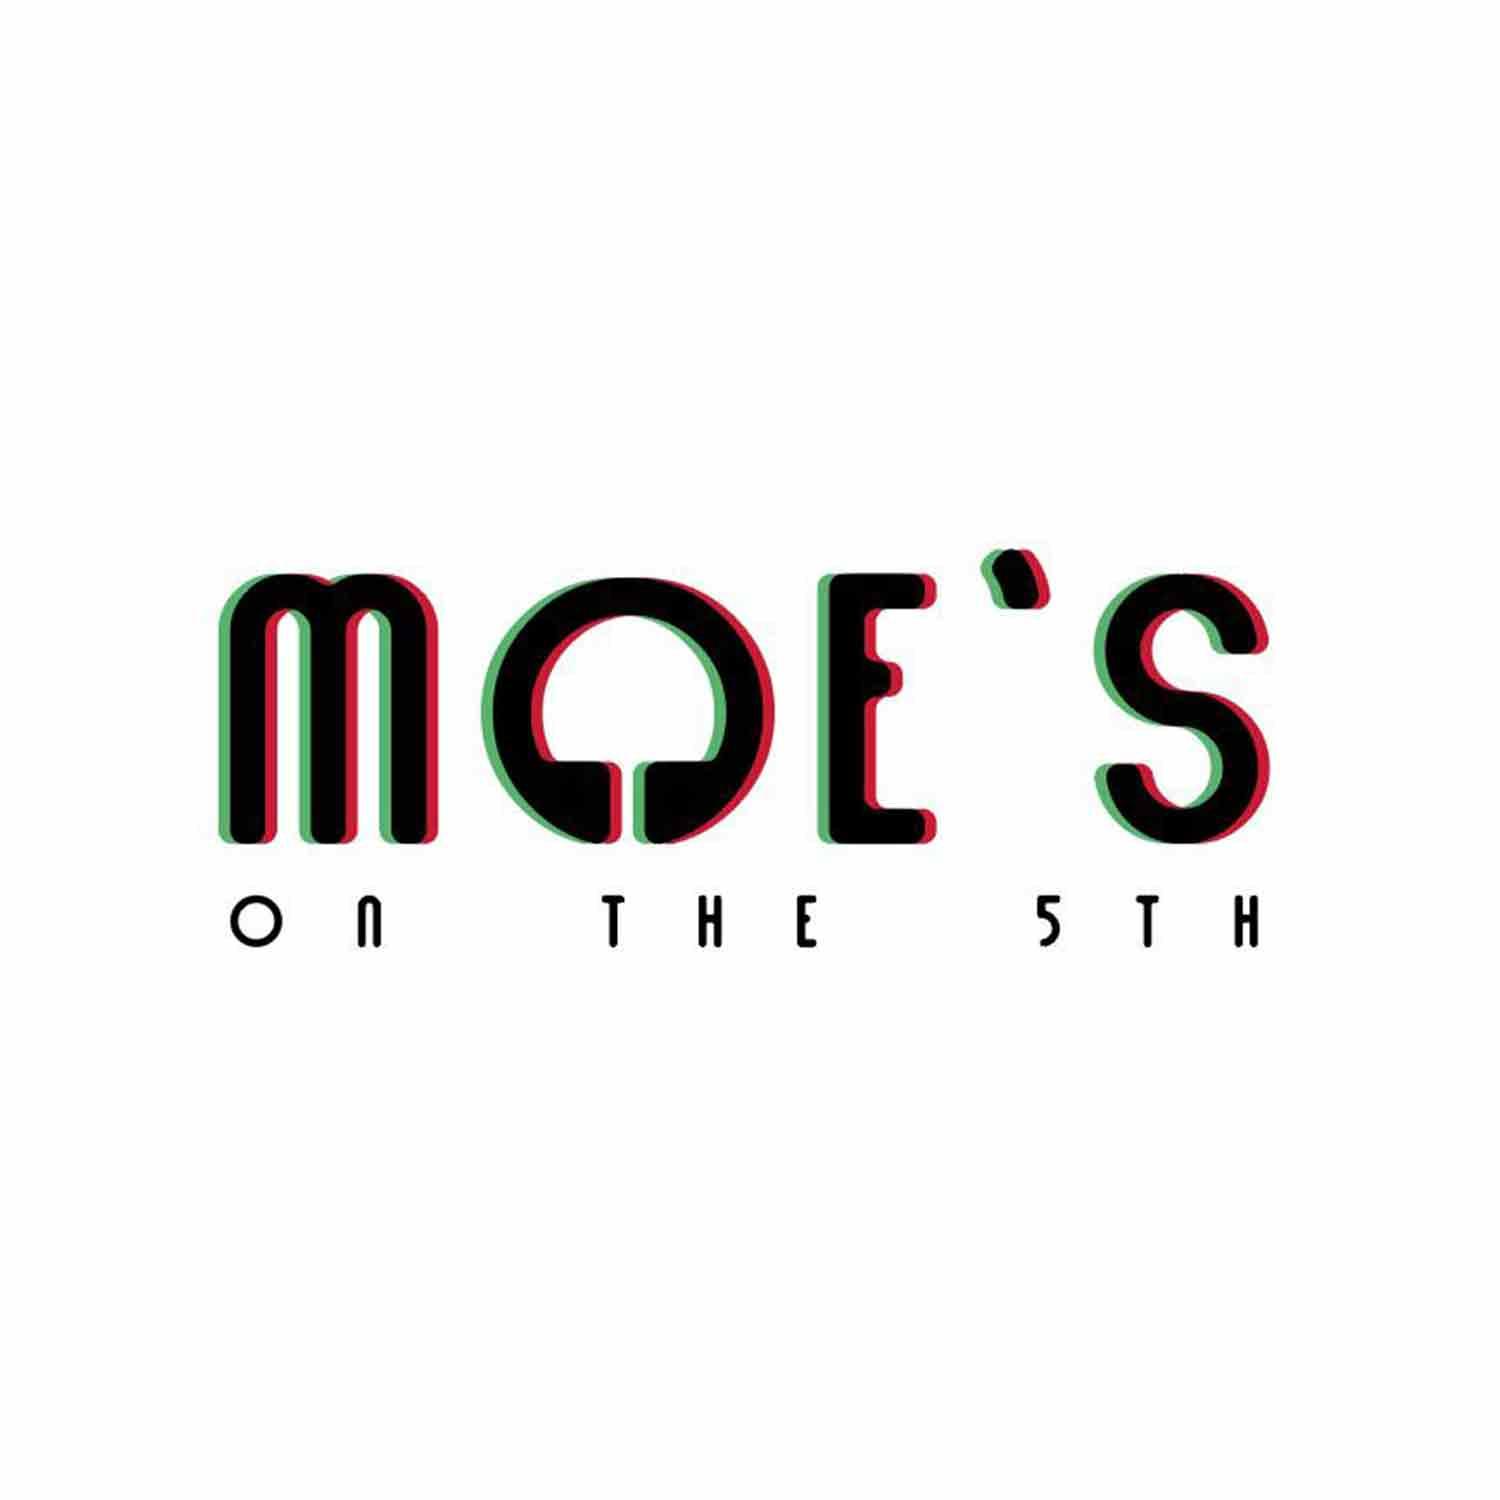 Moe's Magazine